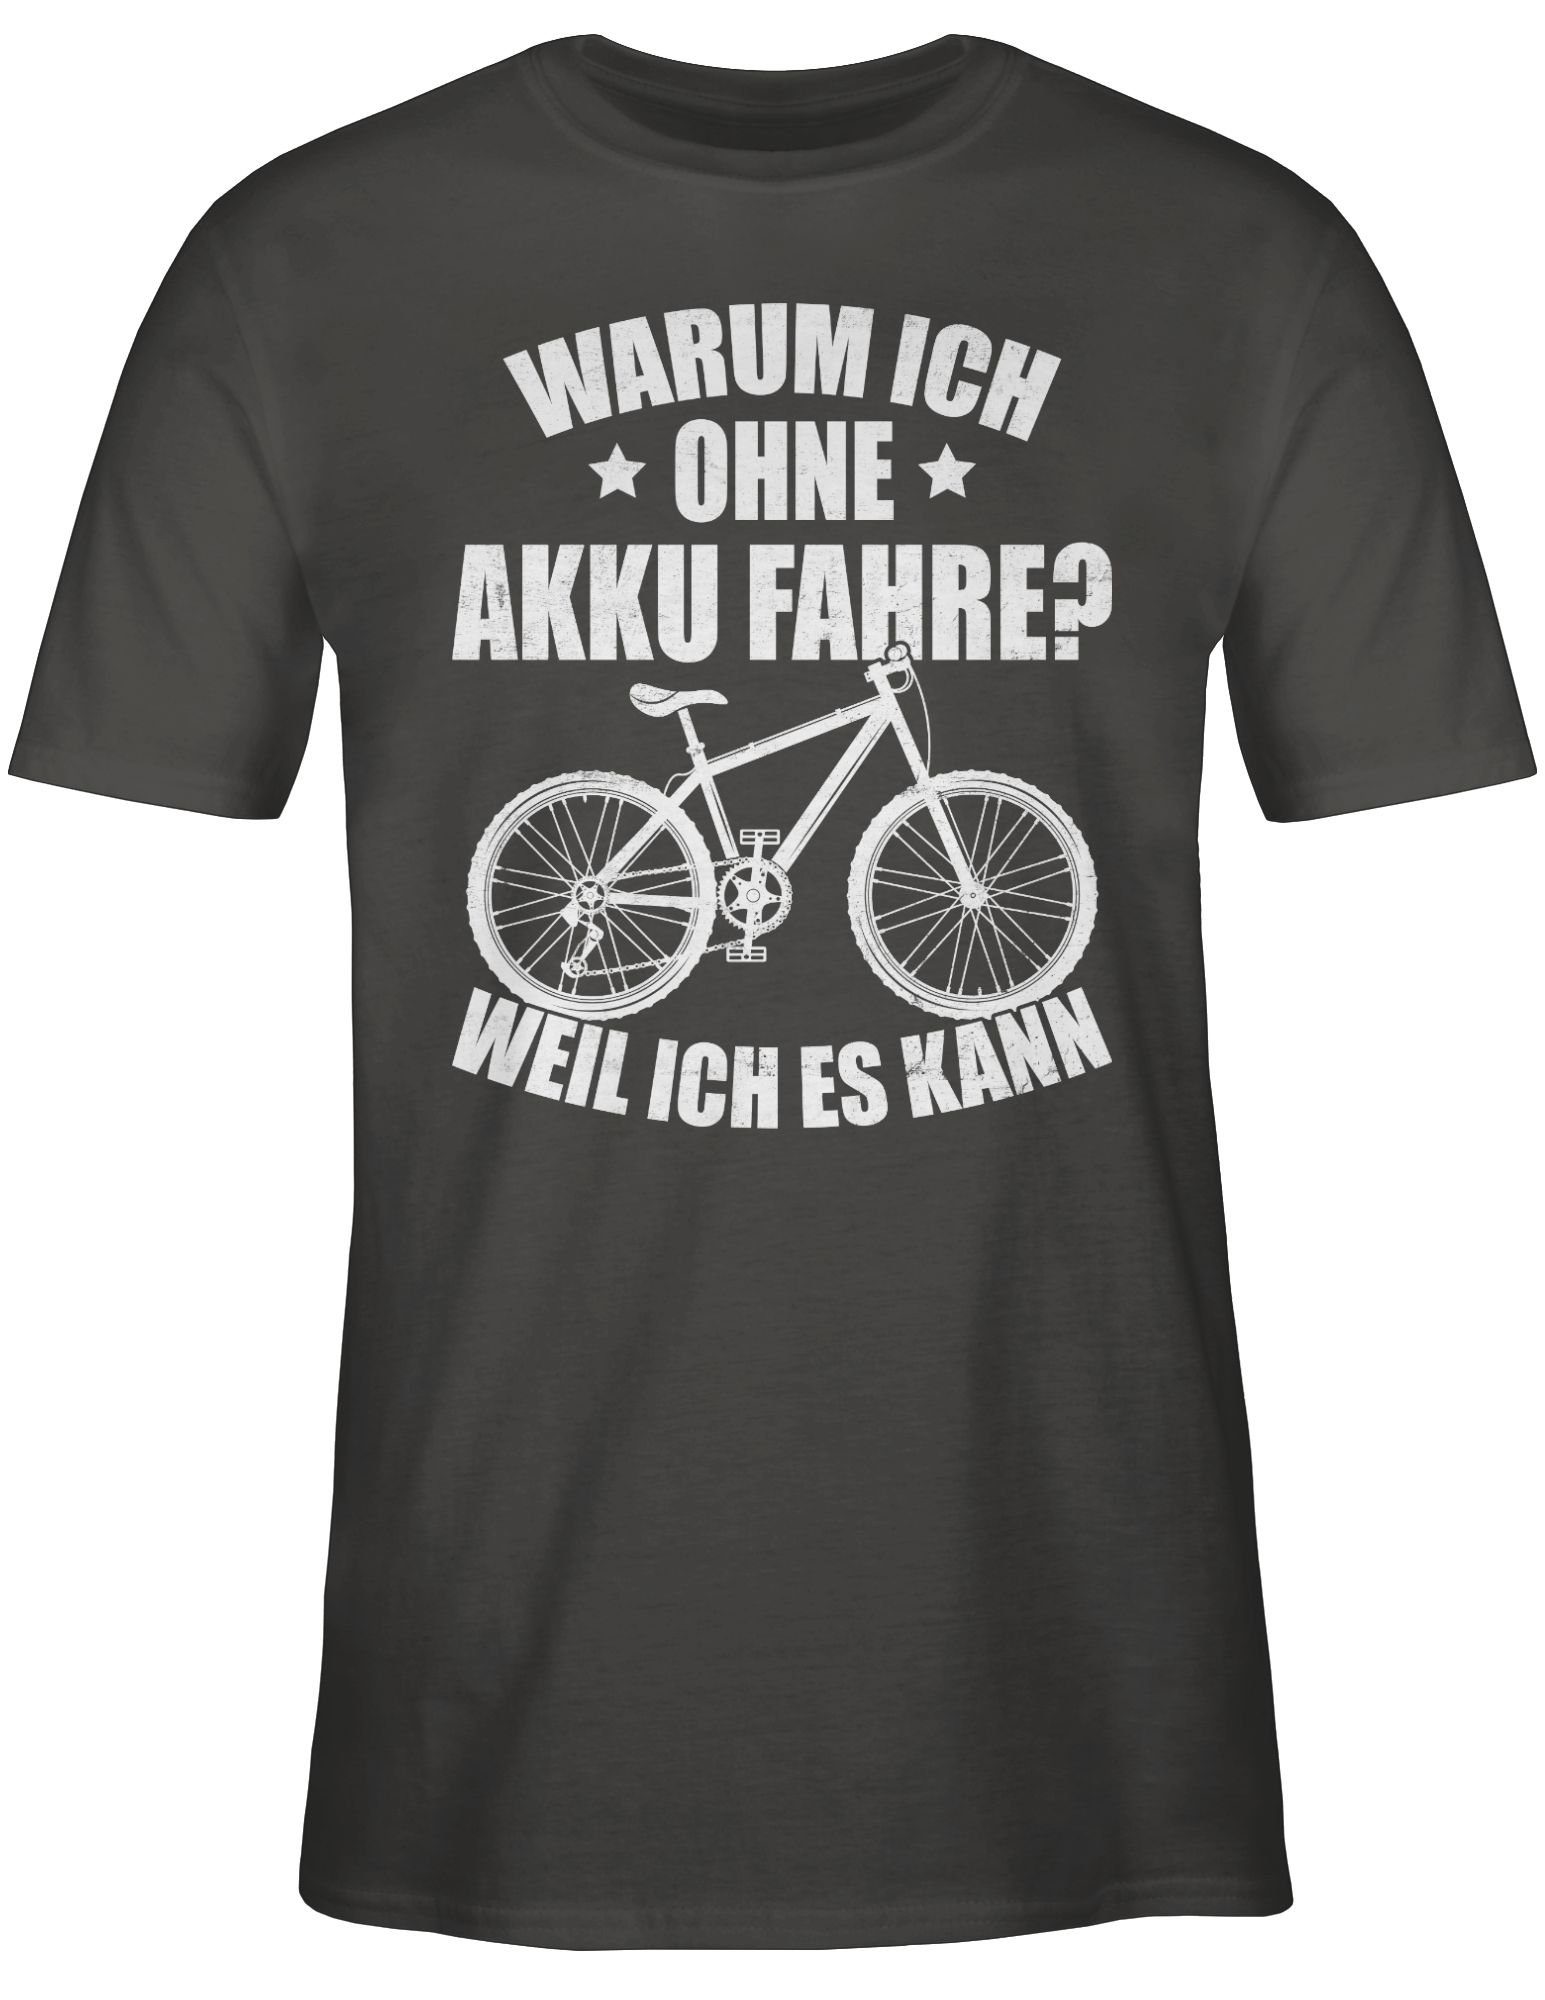 Shirtracer T-Shirt Warum ich fahre weiß ich Dunkelgrau weil kann Radsport es - ohne 03 Bekleidung - Akku Fahrrad